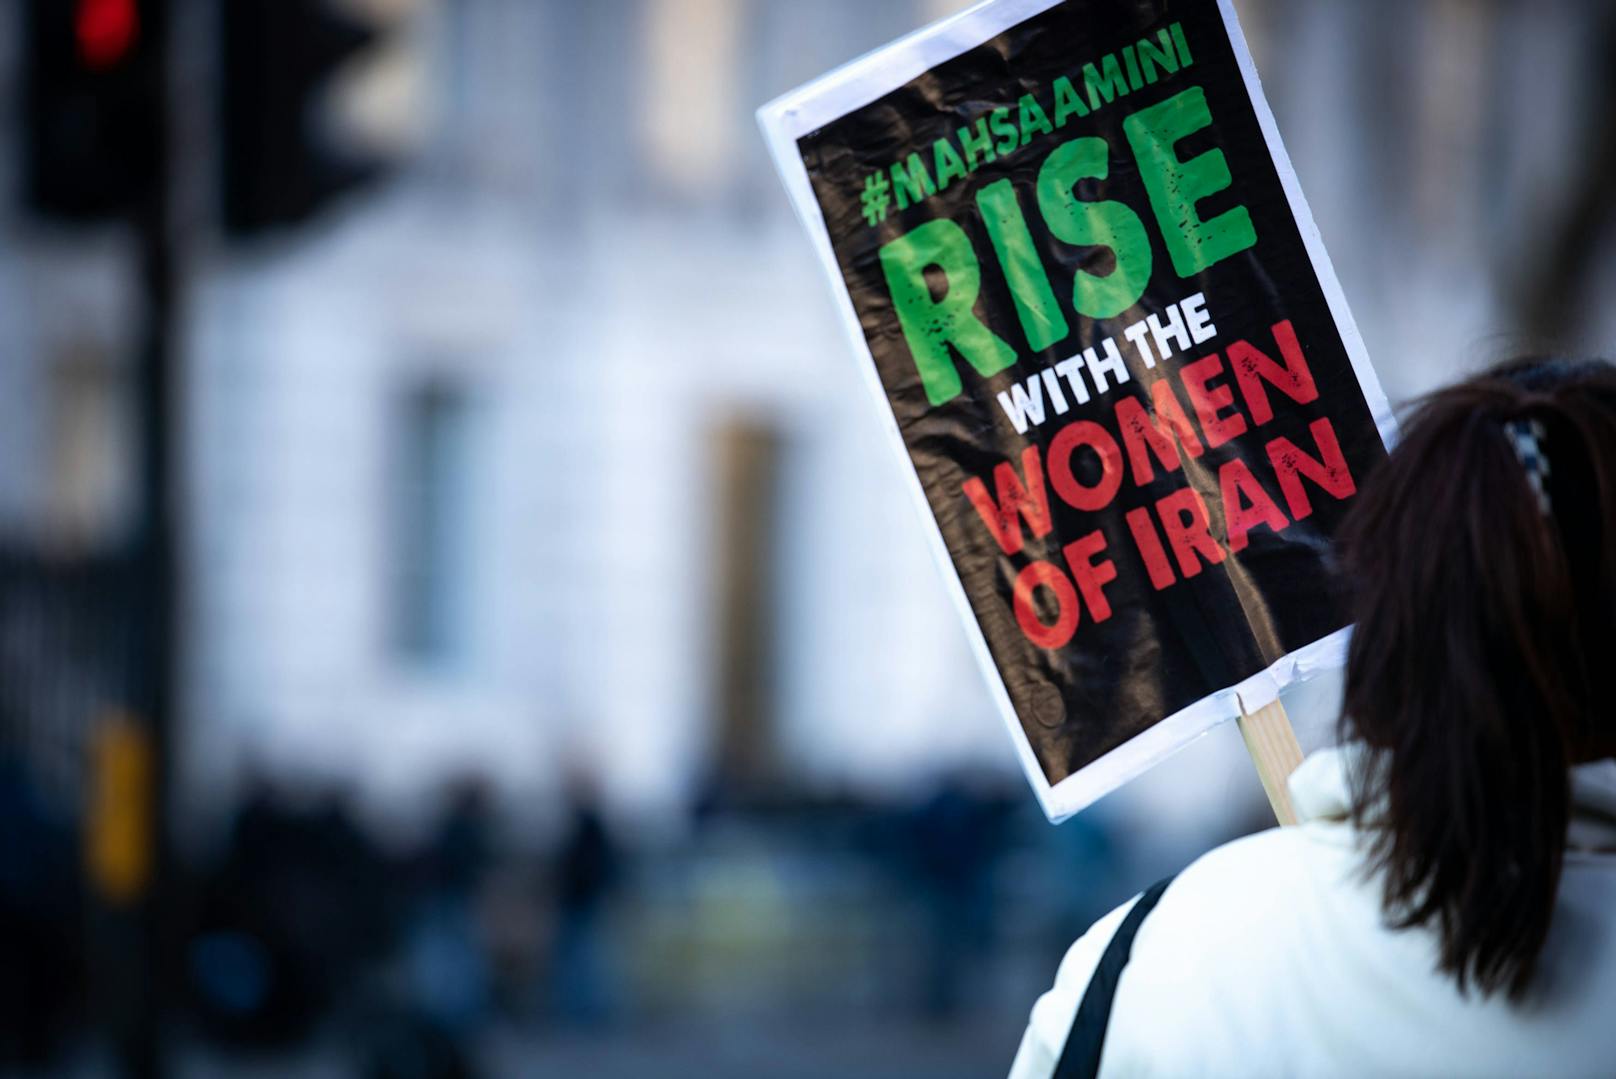 Aktivisten berichten über Folter und Missbrauch im Iran